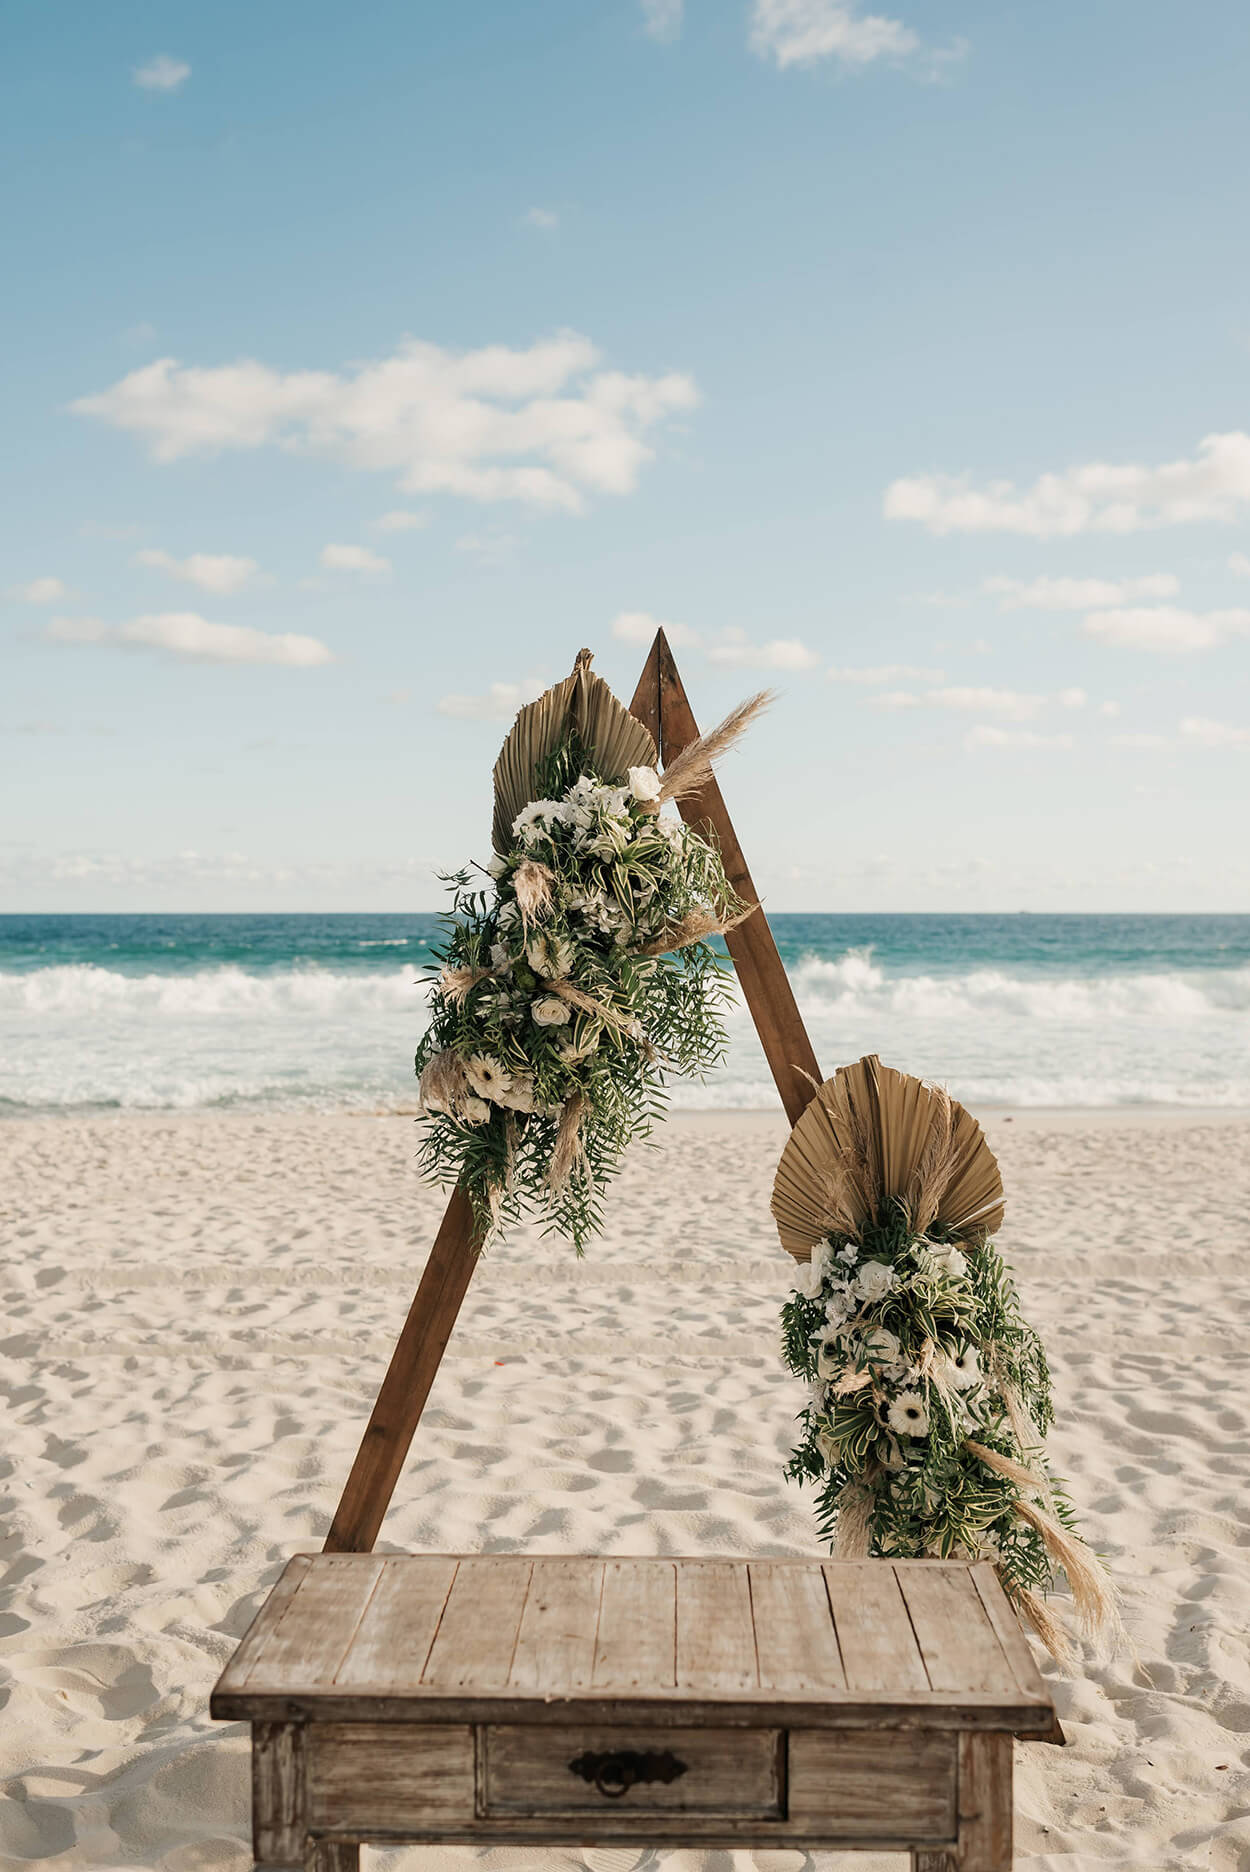 Altar triangular de madiera com arranjo de flores boho na areia da praia